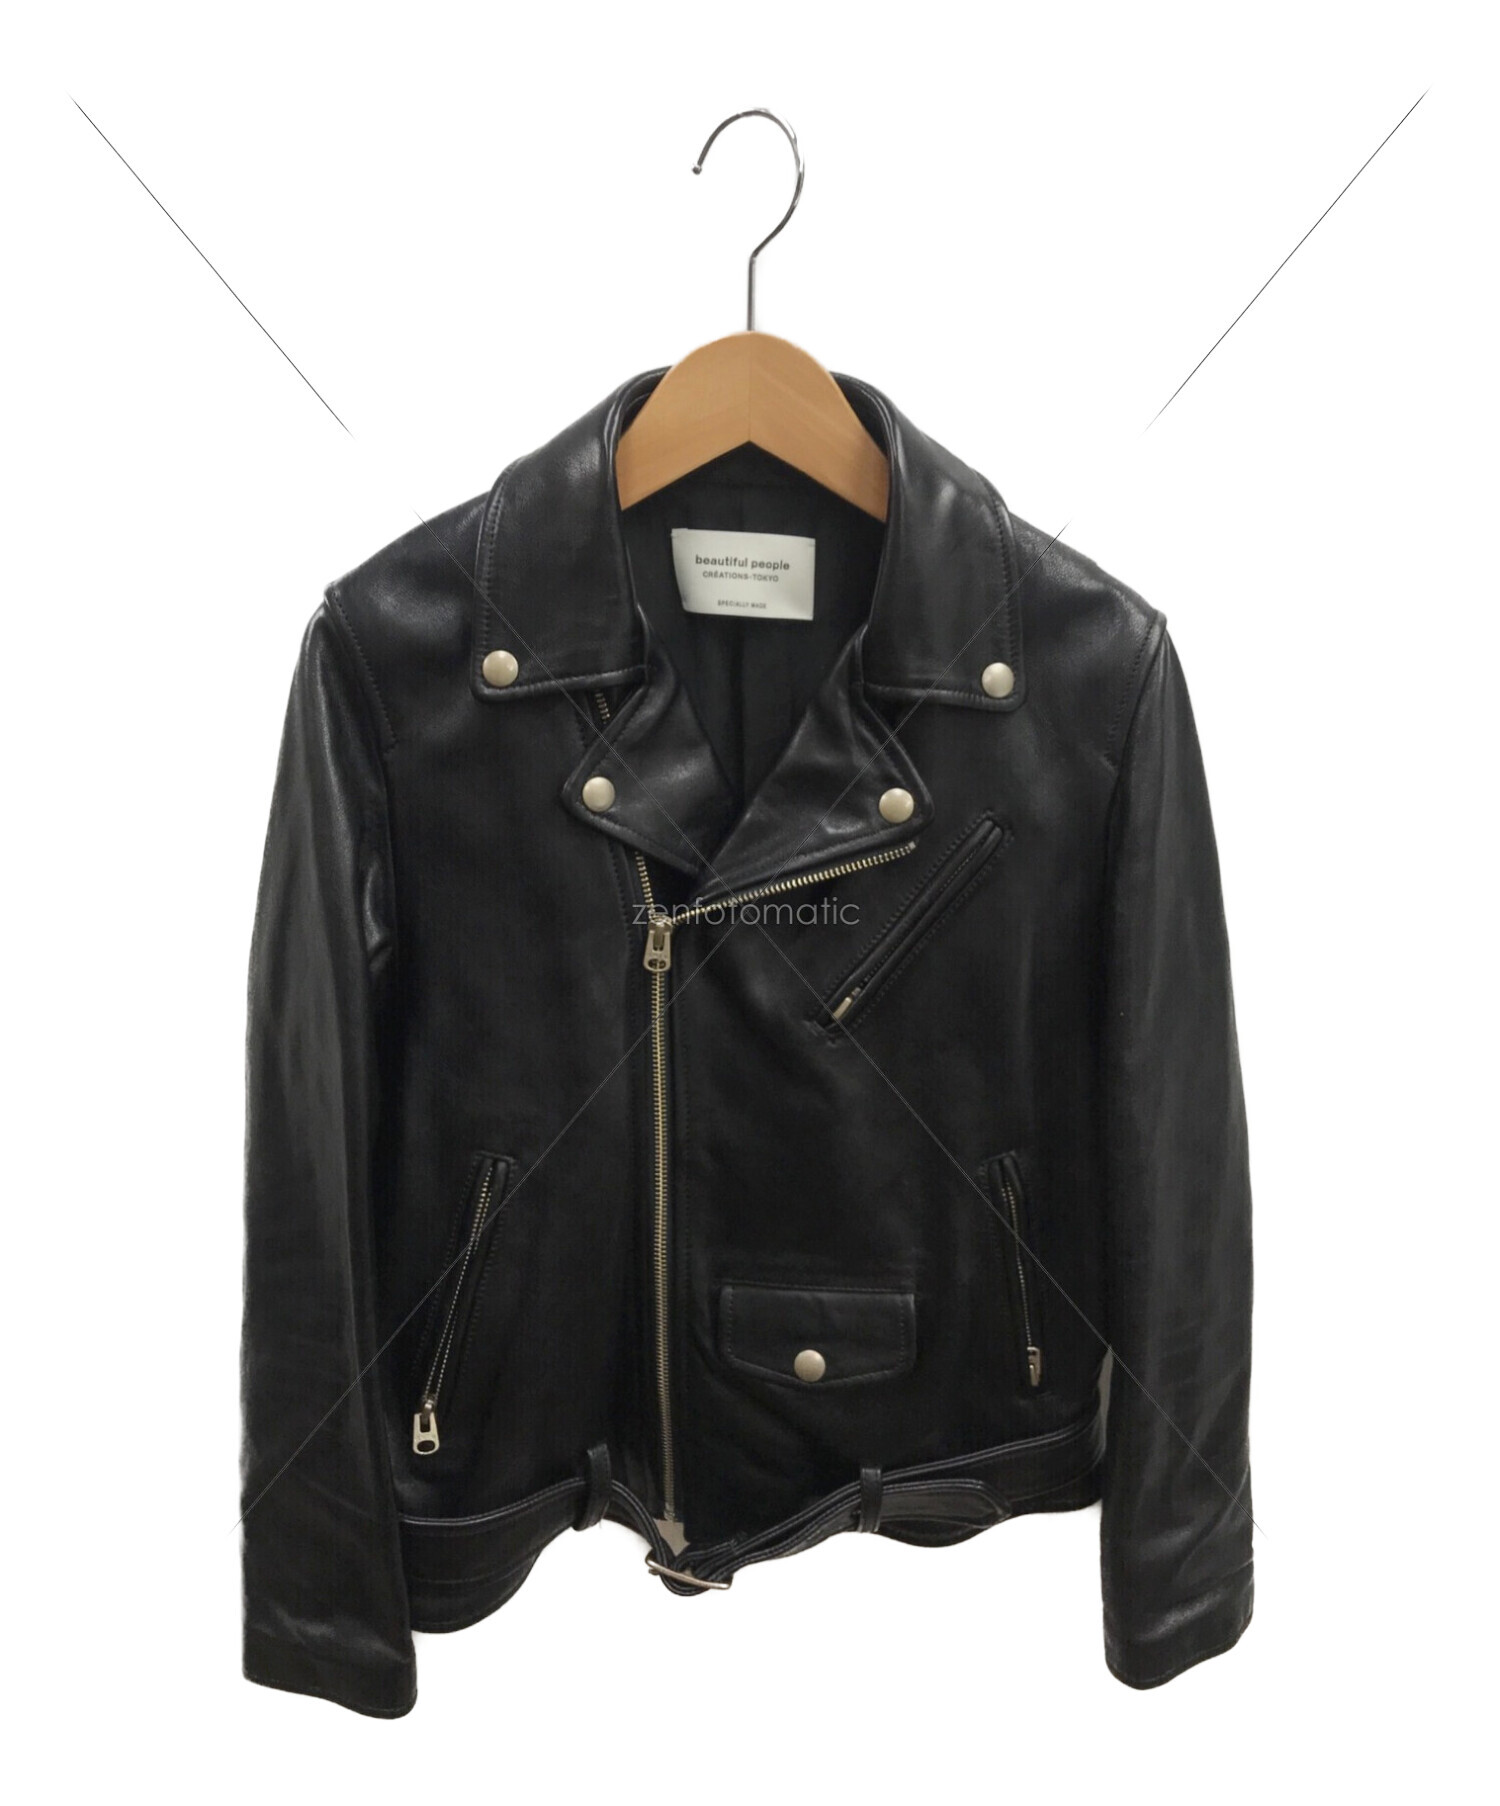 beautiful people (ビューティフルピープル) vintage leather riders jacket /  ヴィンテージレザーライダースジャケット ブラック サイズ:160